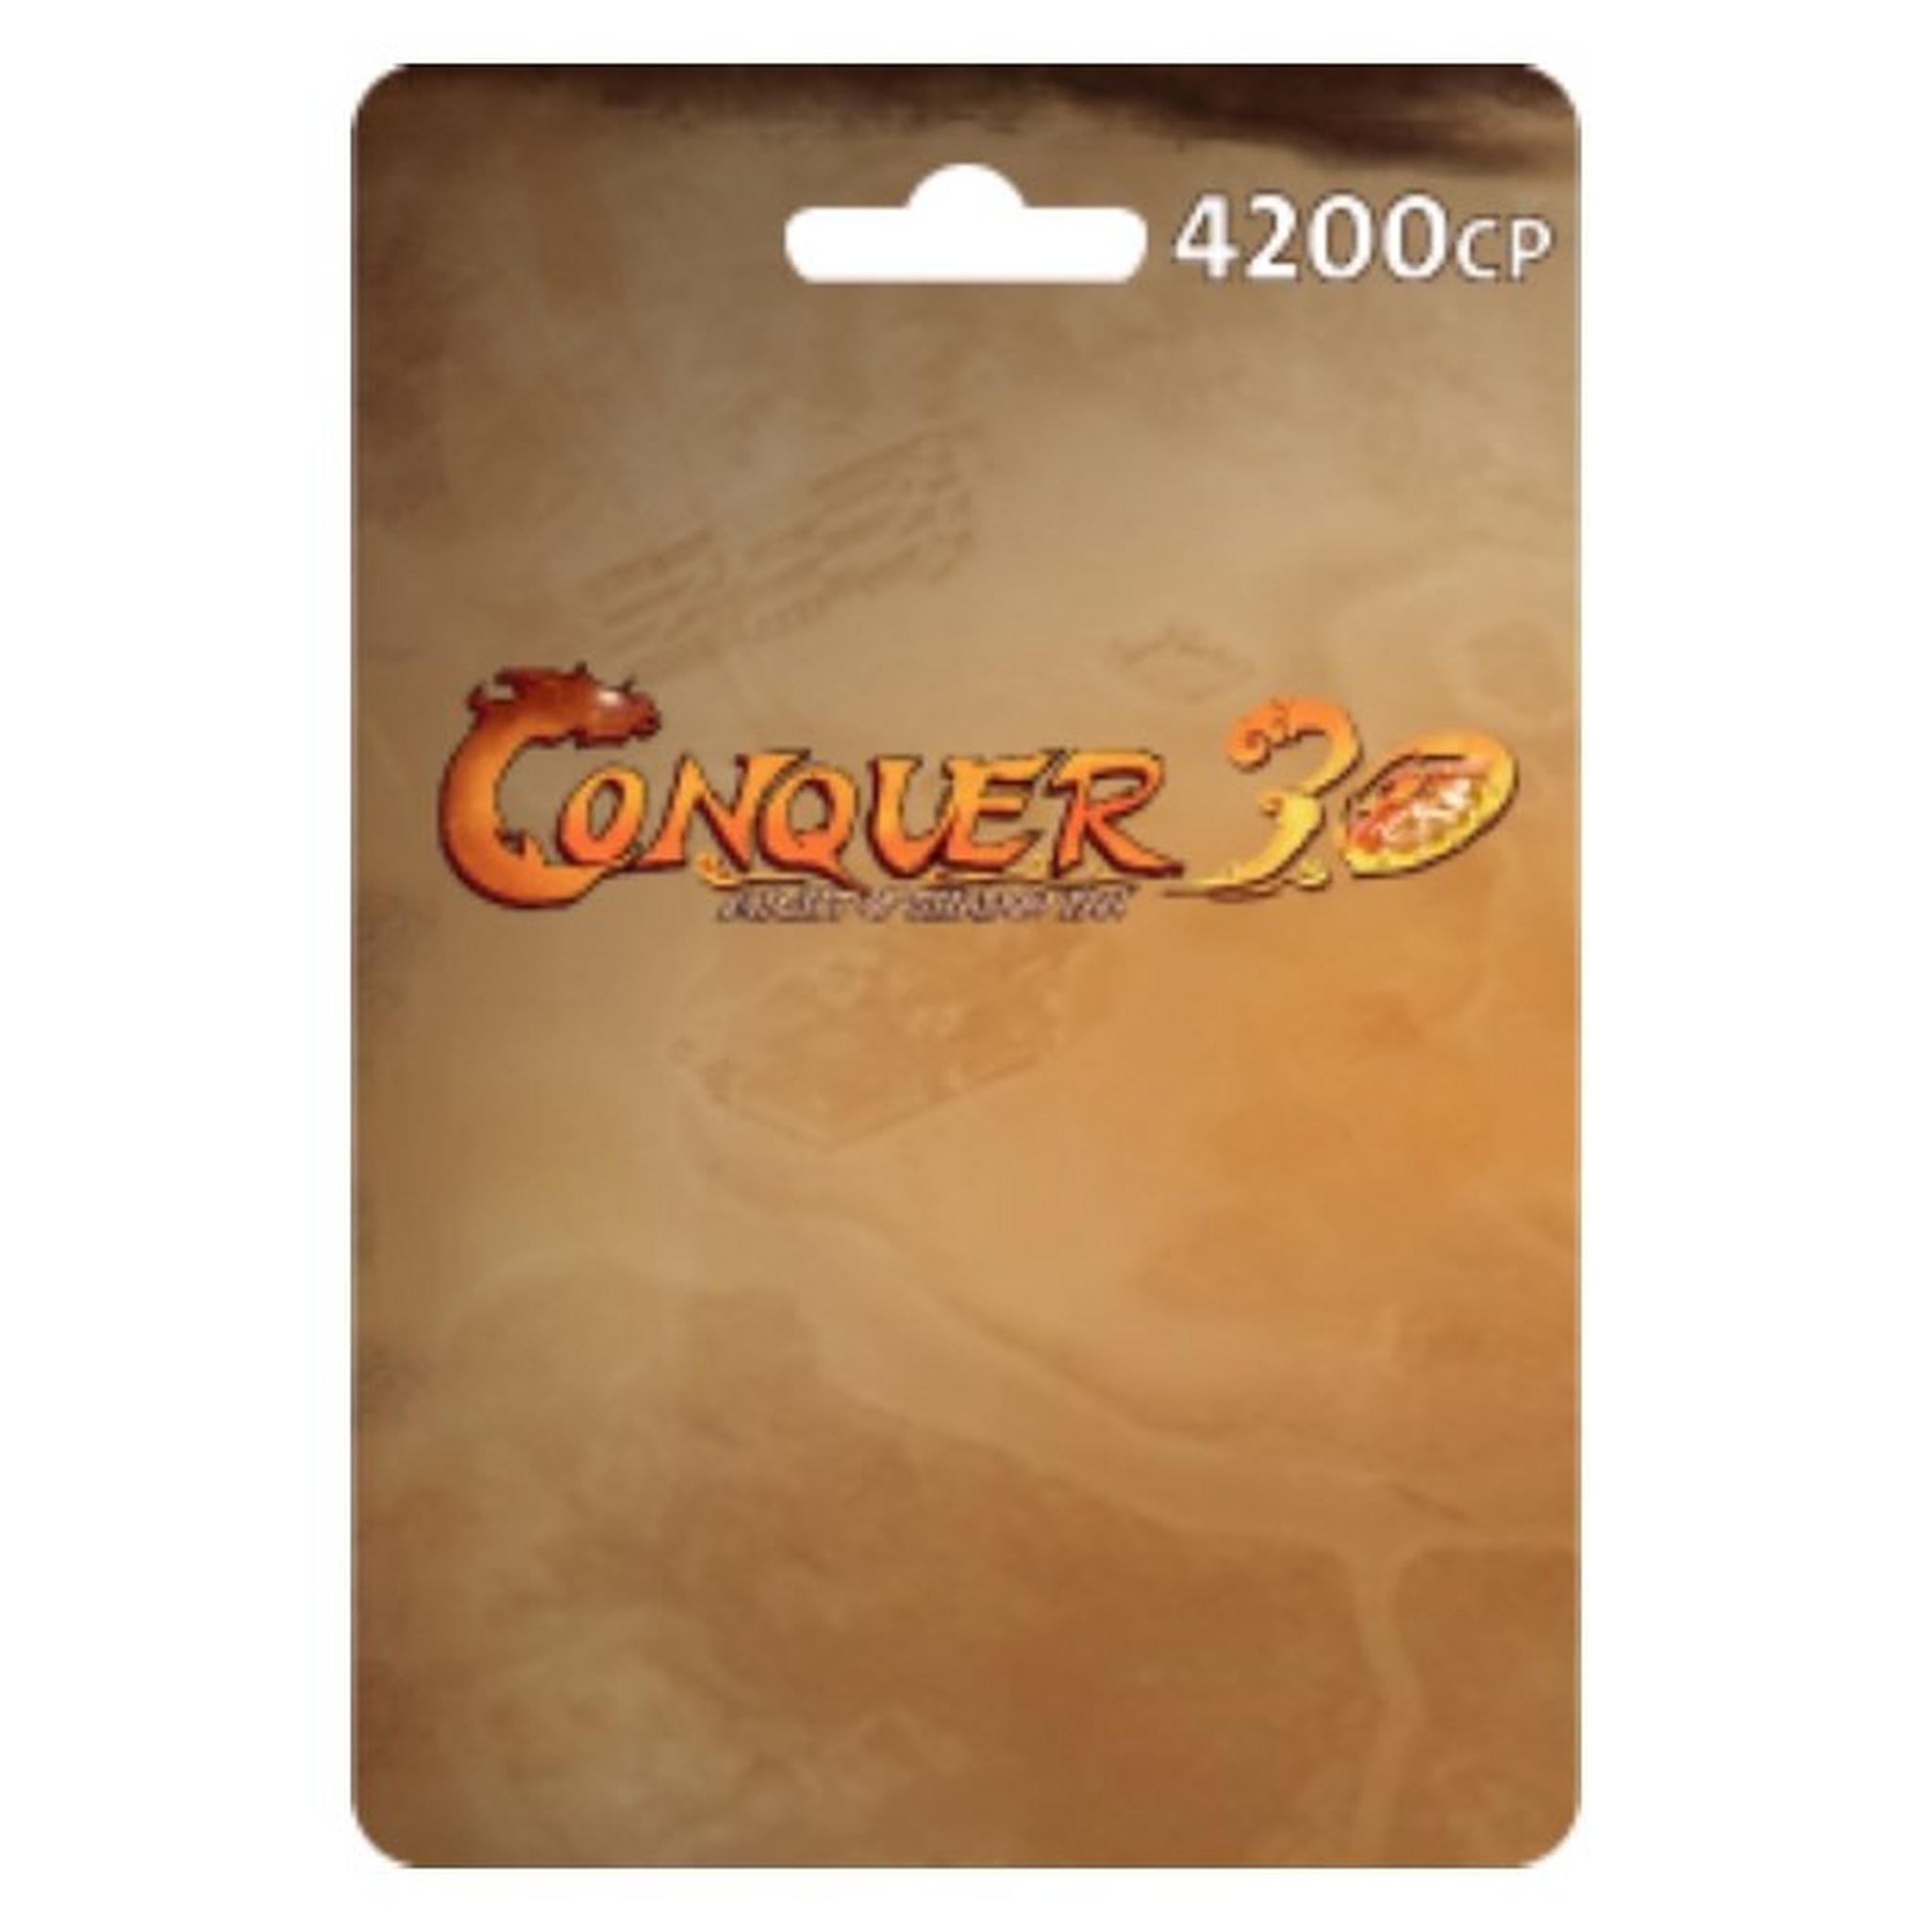 TQ Conquer Online Card - 4200 CP